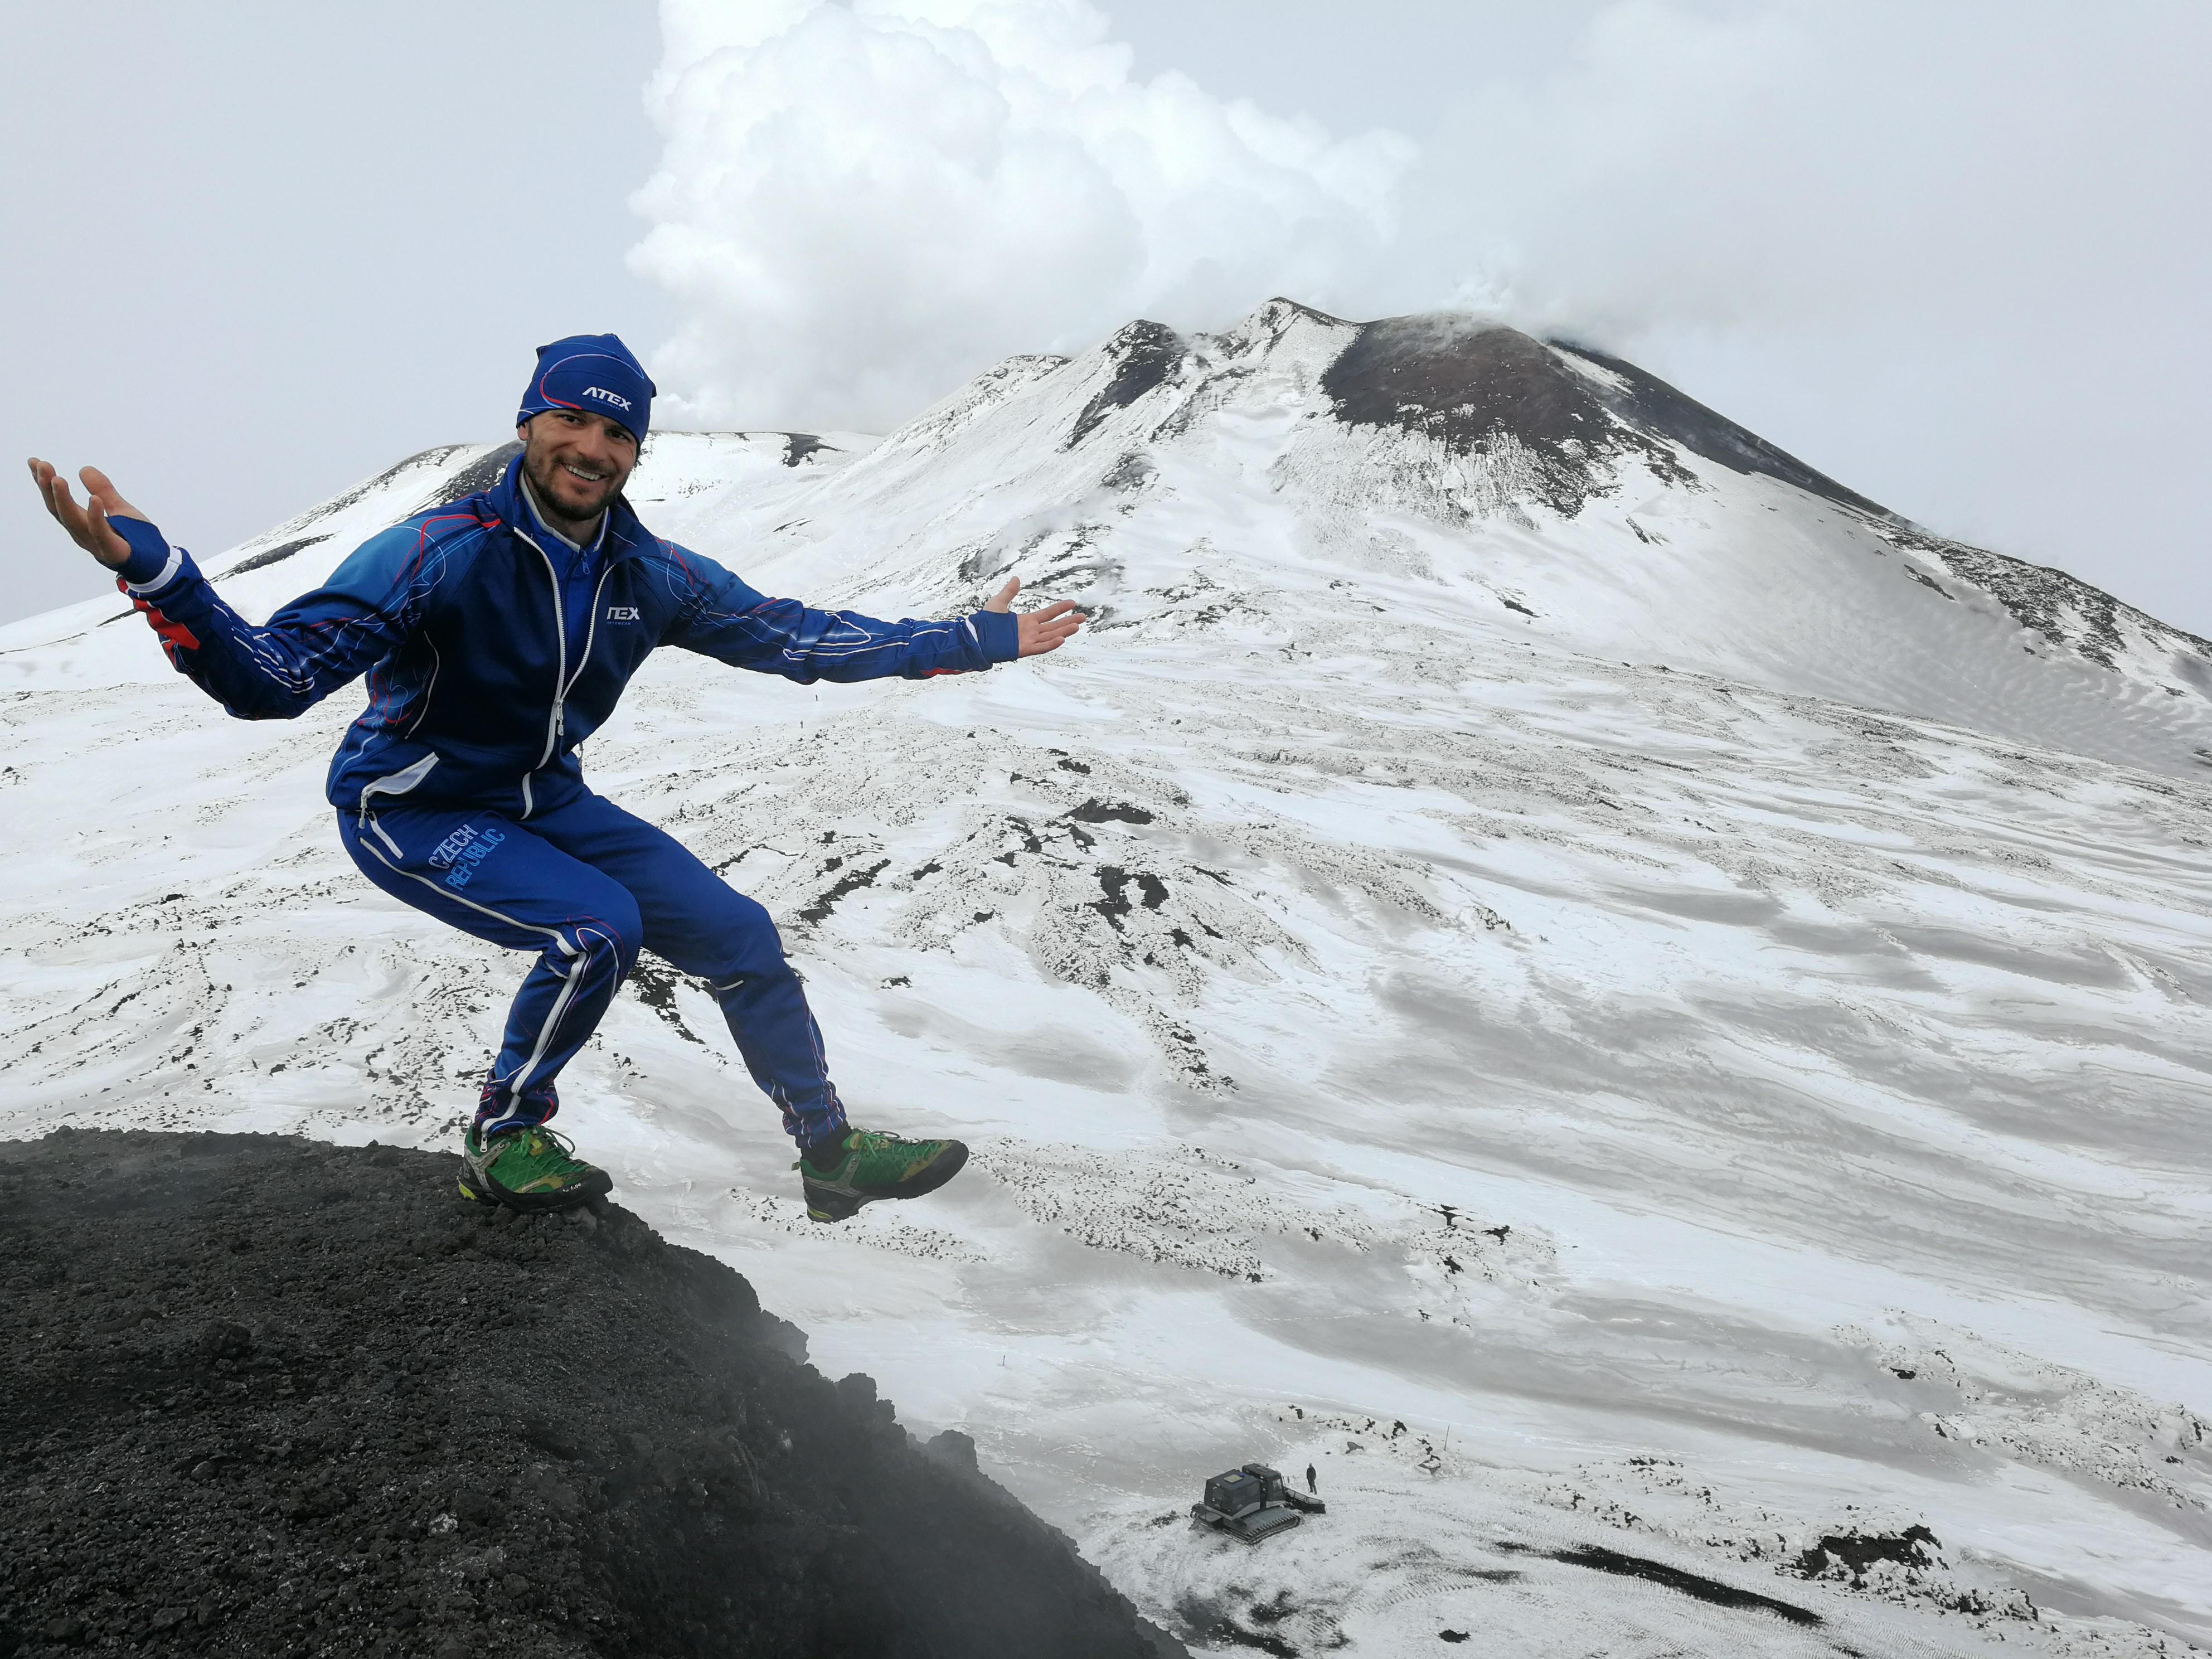 Atmosféru umocňovala dýmající Etna v pozadí, říká Marek Rauchfuss